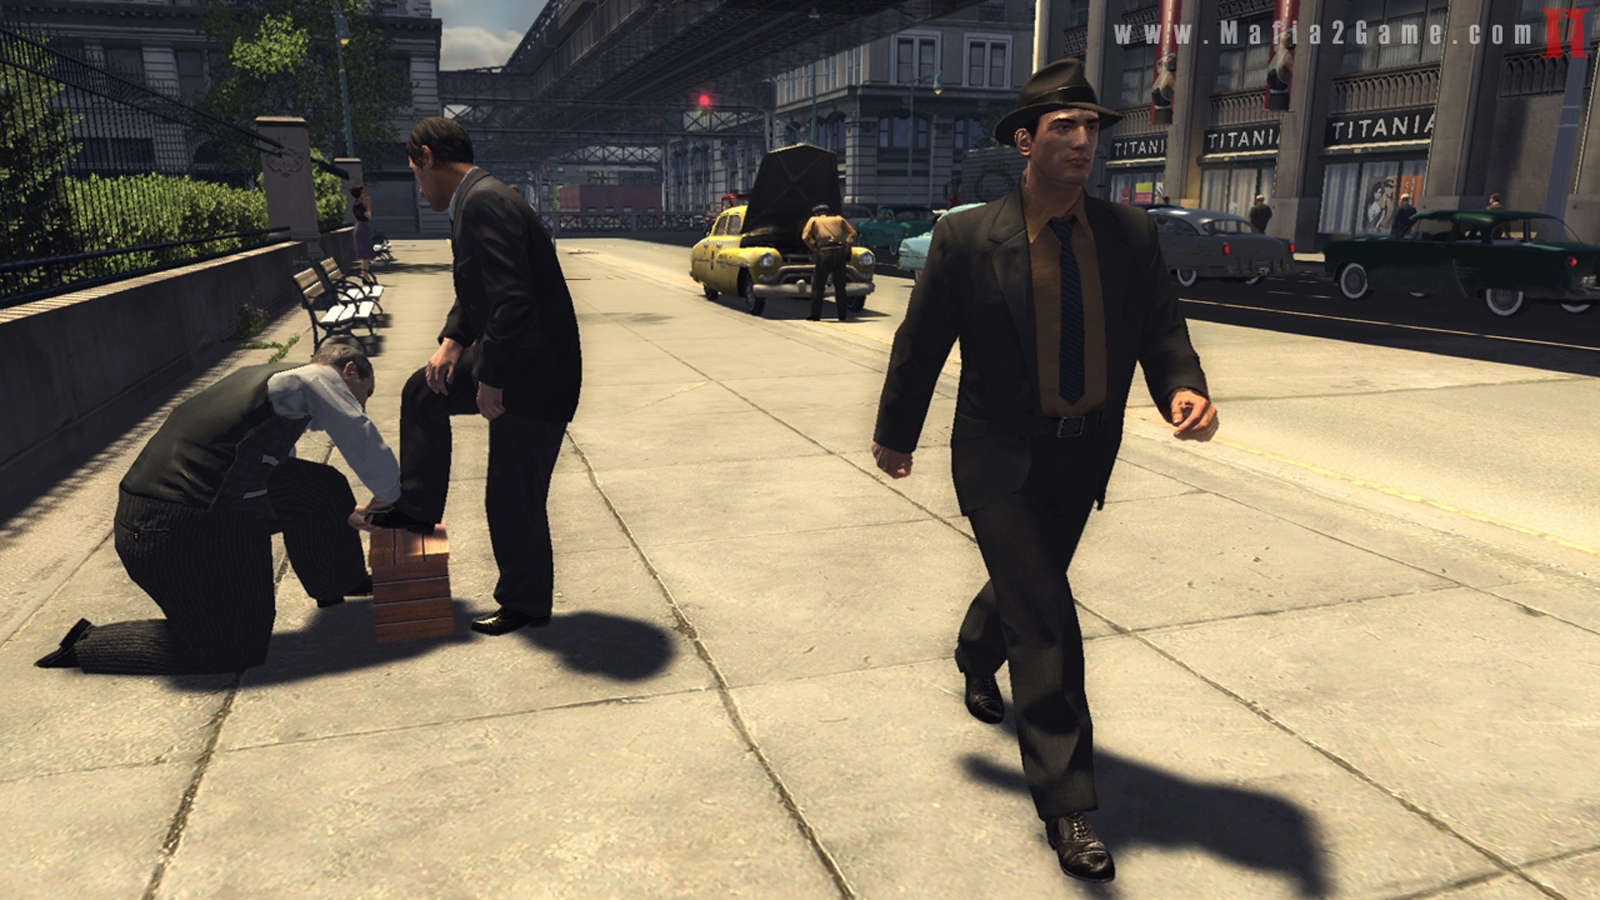 Скриншот из игры Mafia 2 под номером 21